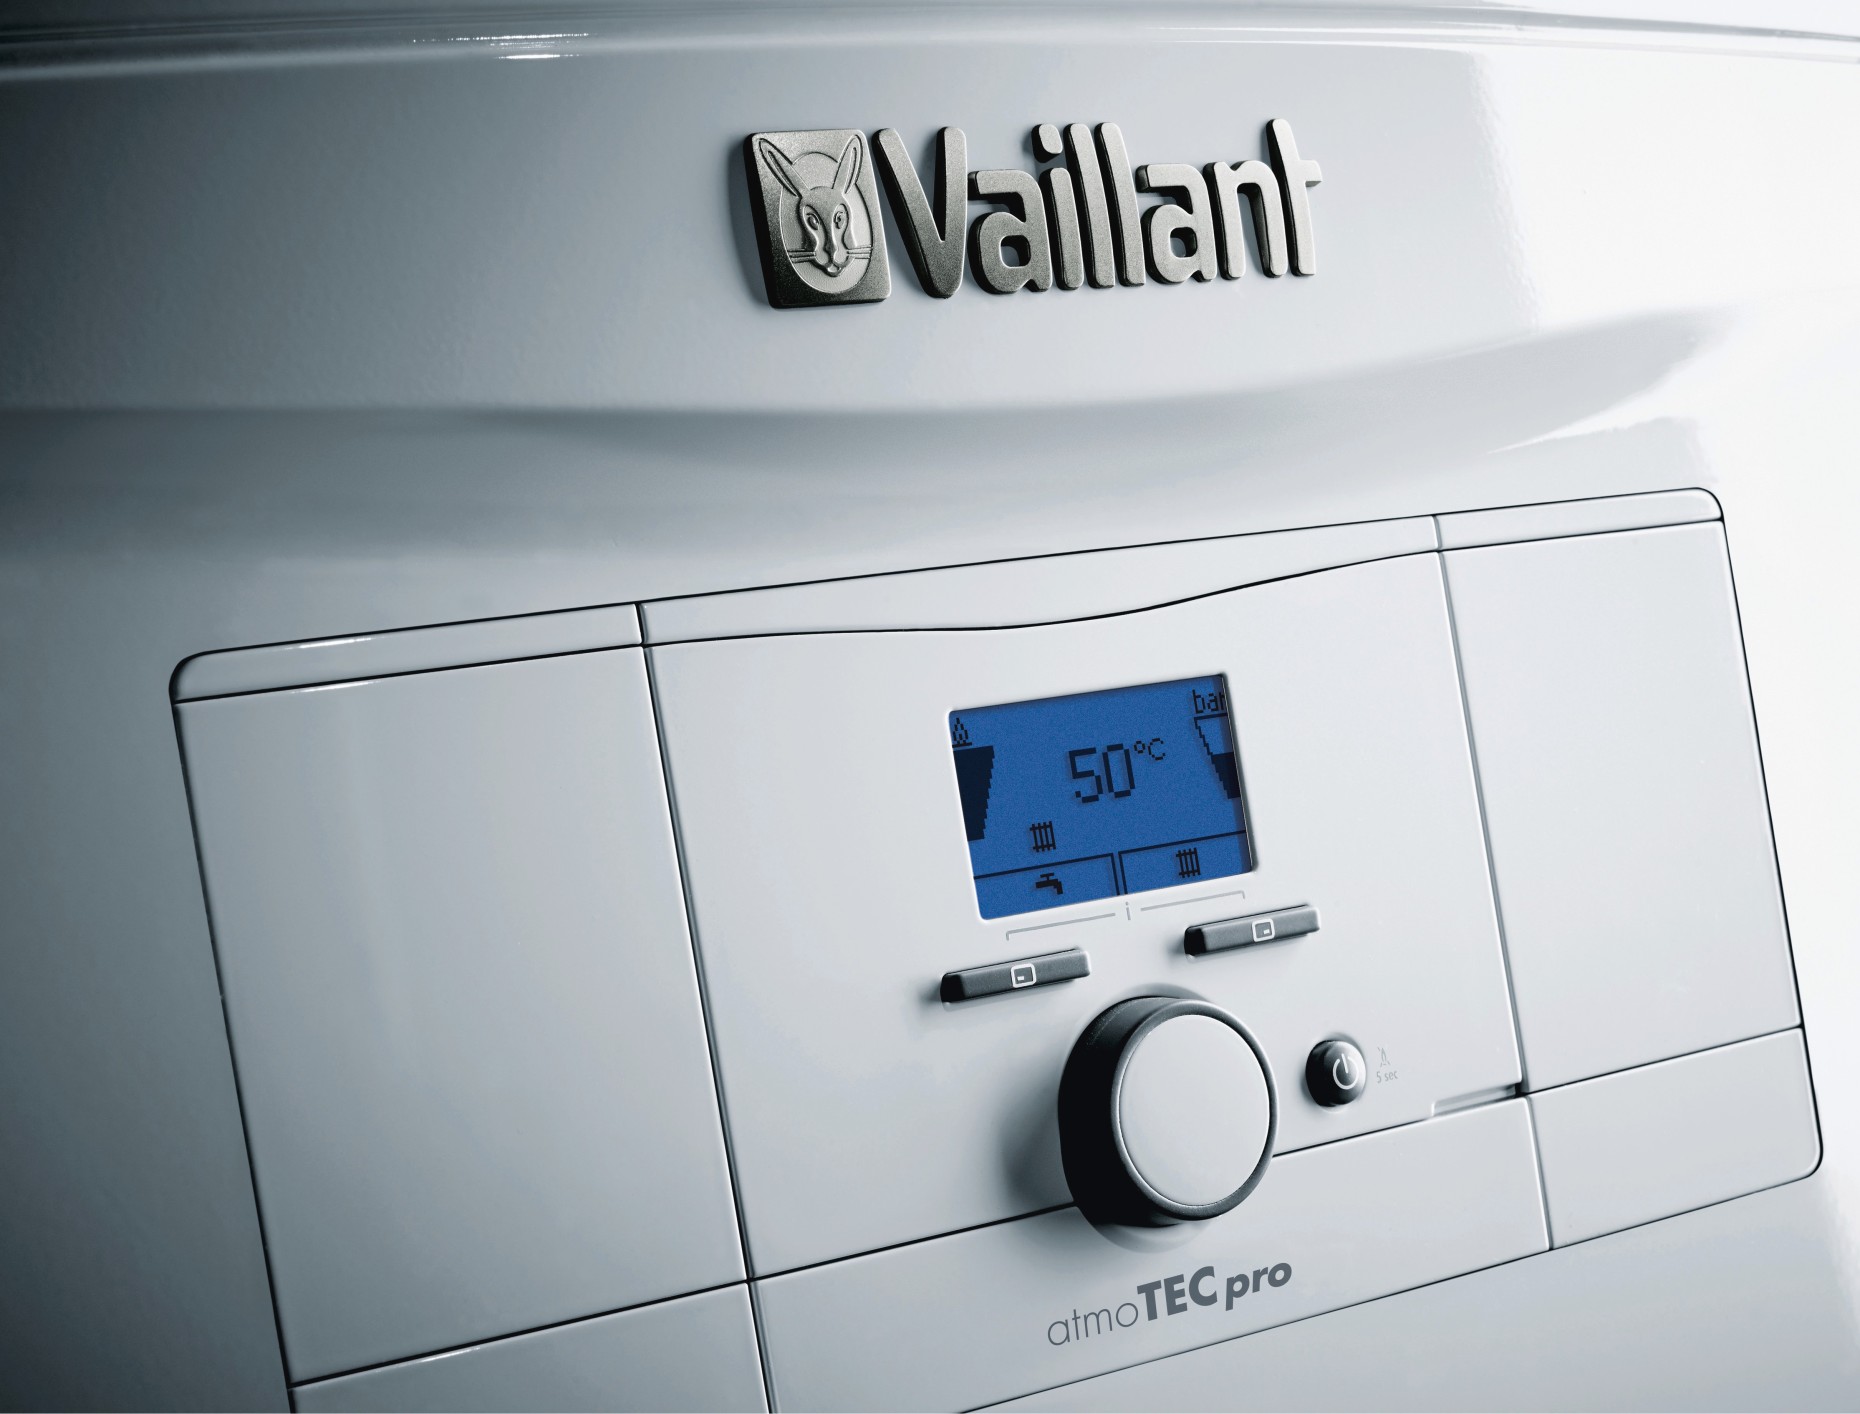 Газовый котел Vaillant atmoTec Pro VUW 240/5-3 цена 37700.00 грн - фотография 2